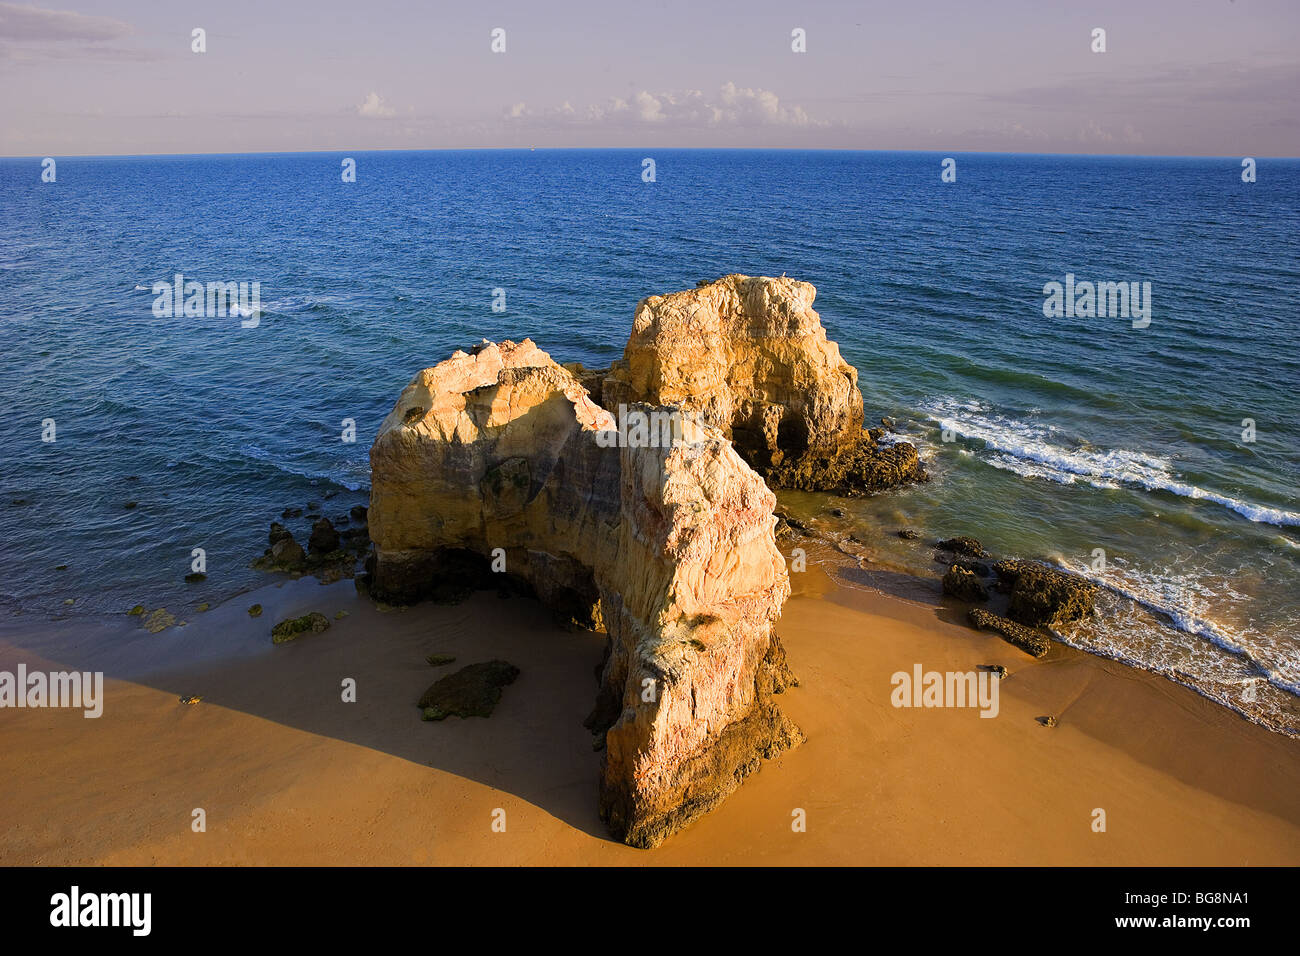 Portugal. La región de Algarve. El paisaje costero. Foto de stock